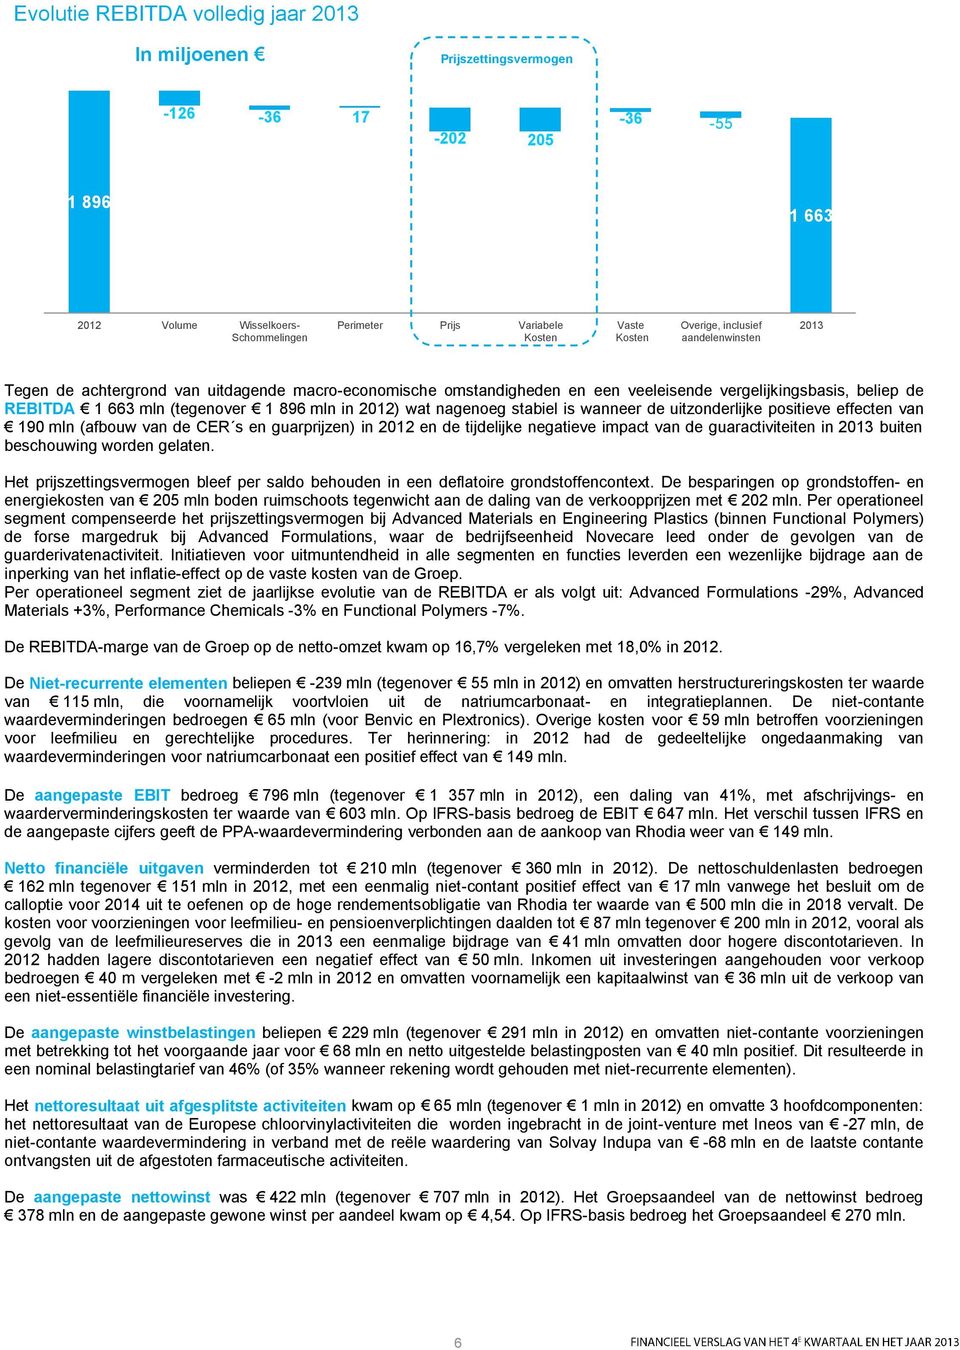 2012) wat nagenoeg stabiel is wanneer de uitzonderlijke positieve effecten van 190 mln (afbouw van de CER s en guarprijzen) in 2012 en de tijdelijke negatieve impact van de guaractiviteiten in 2013